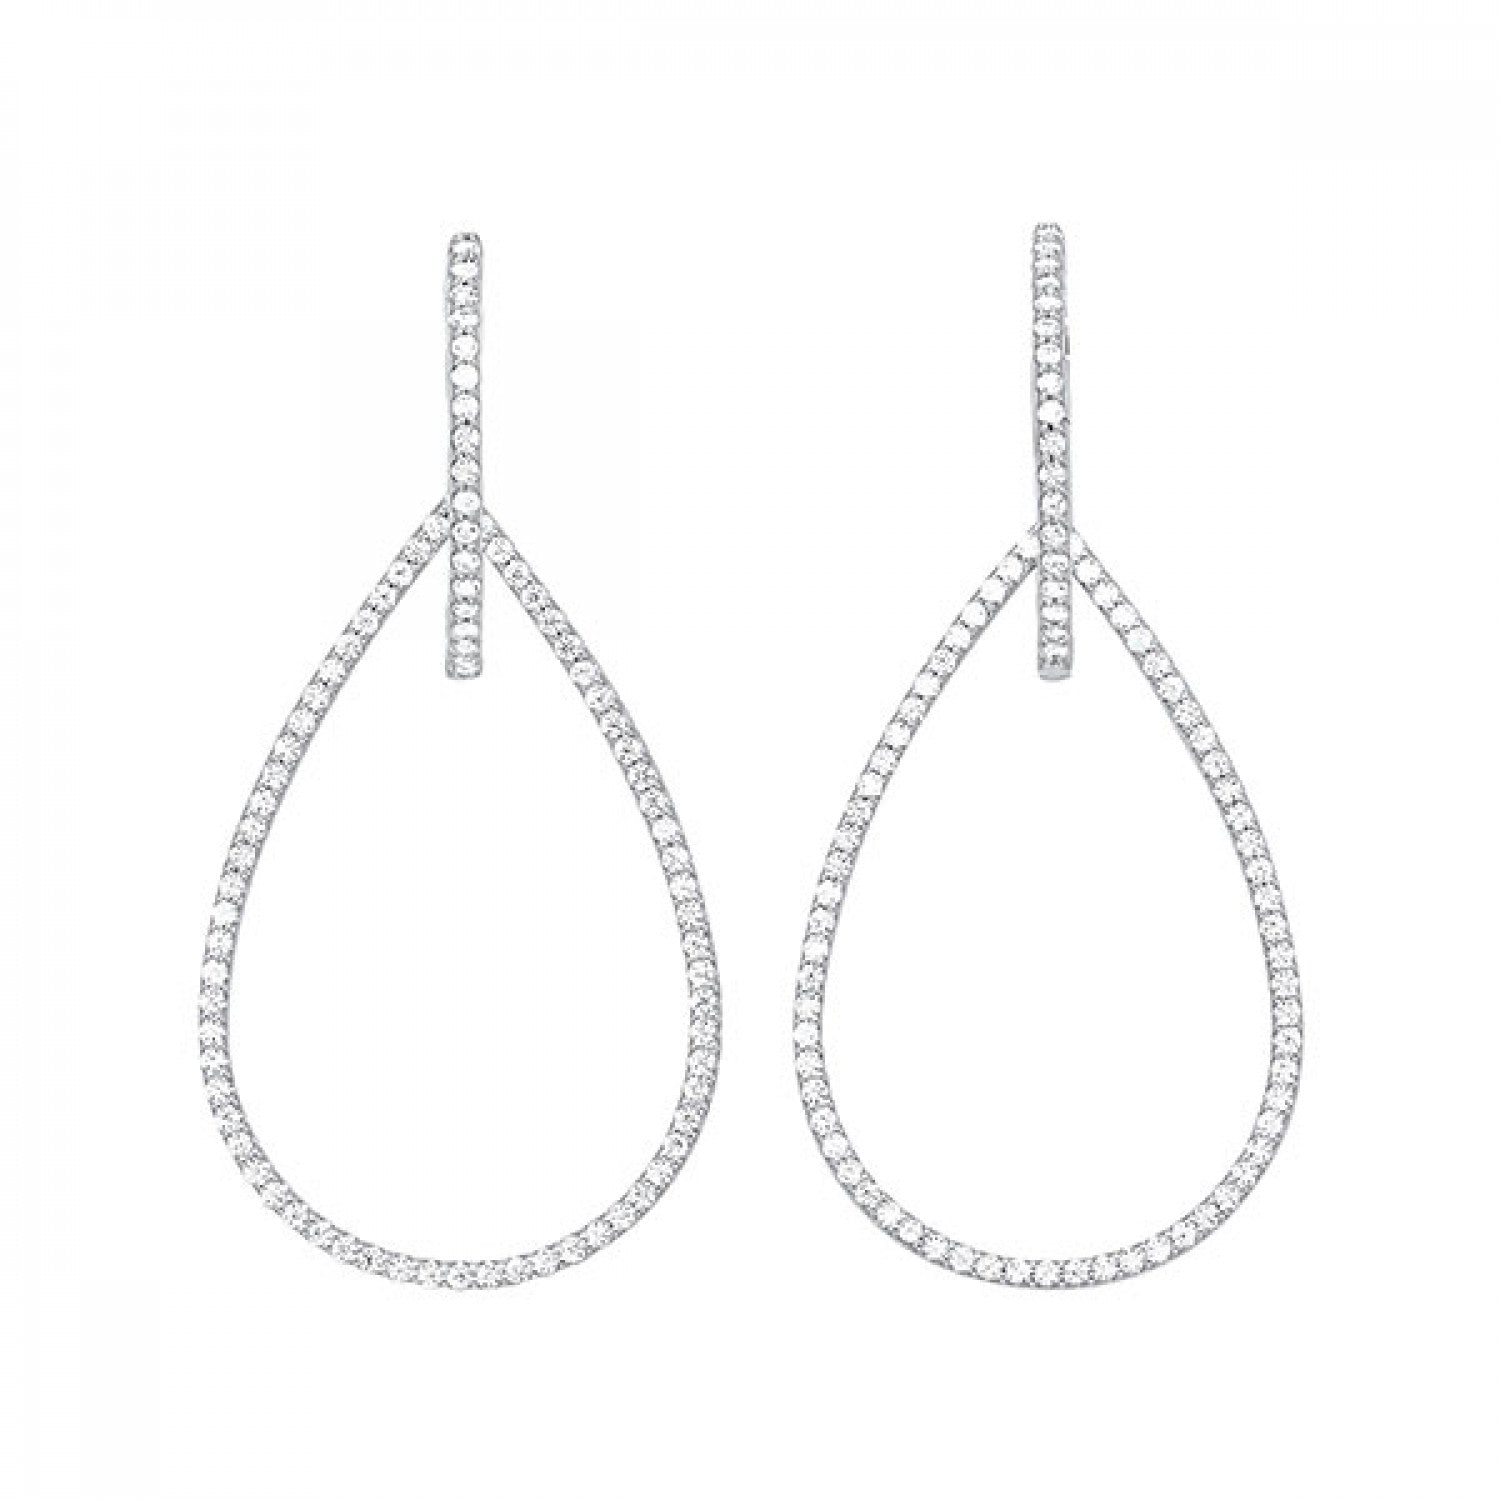 10KT White Gold Versatile Diamond Dangle Earrings.